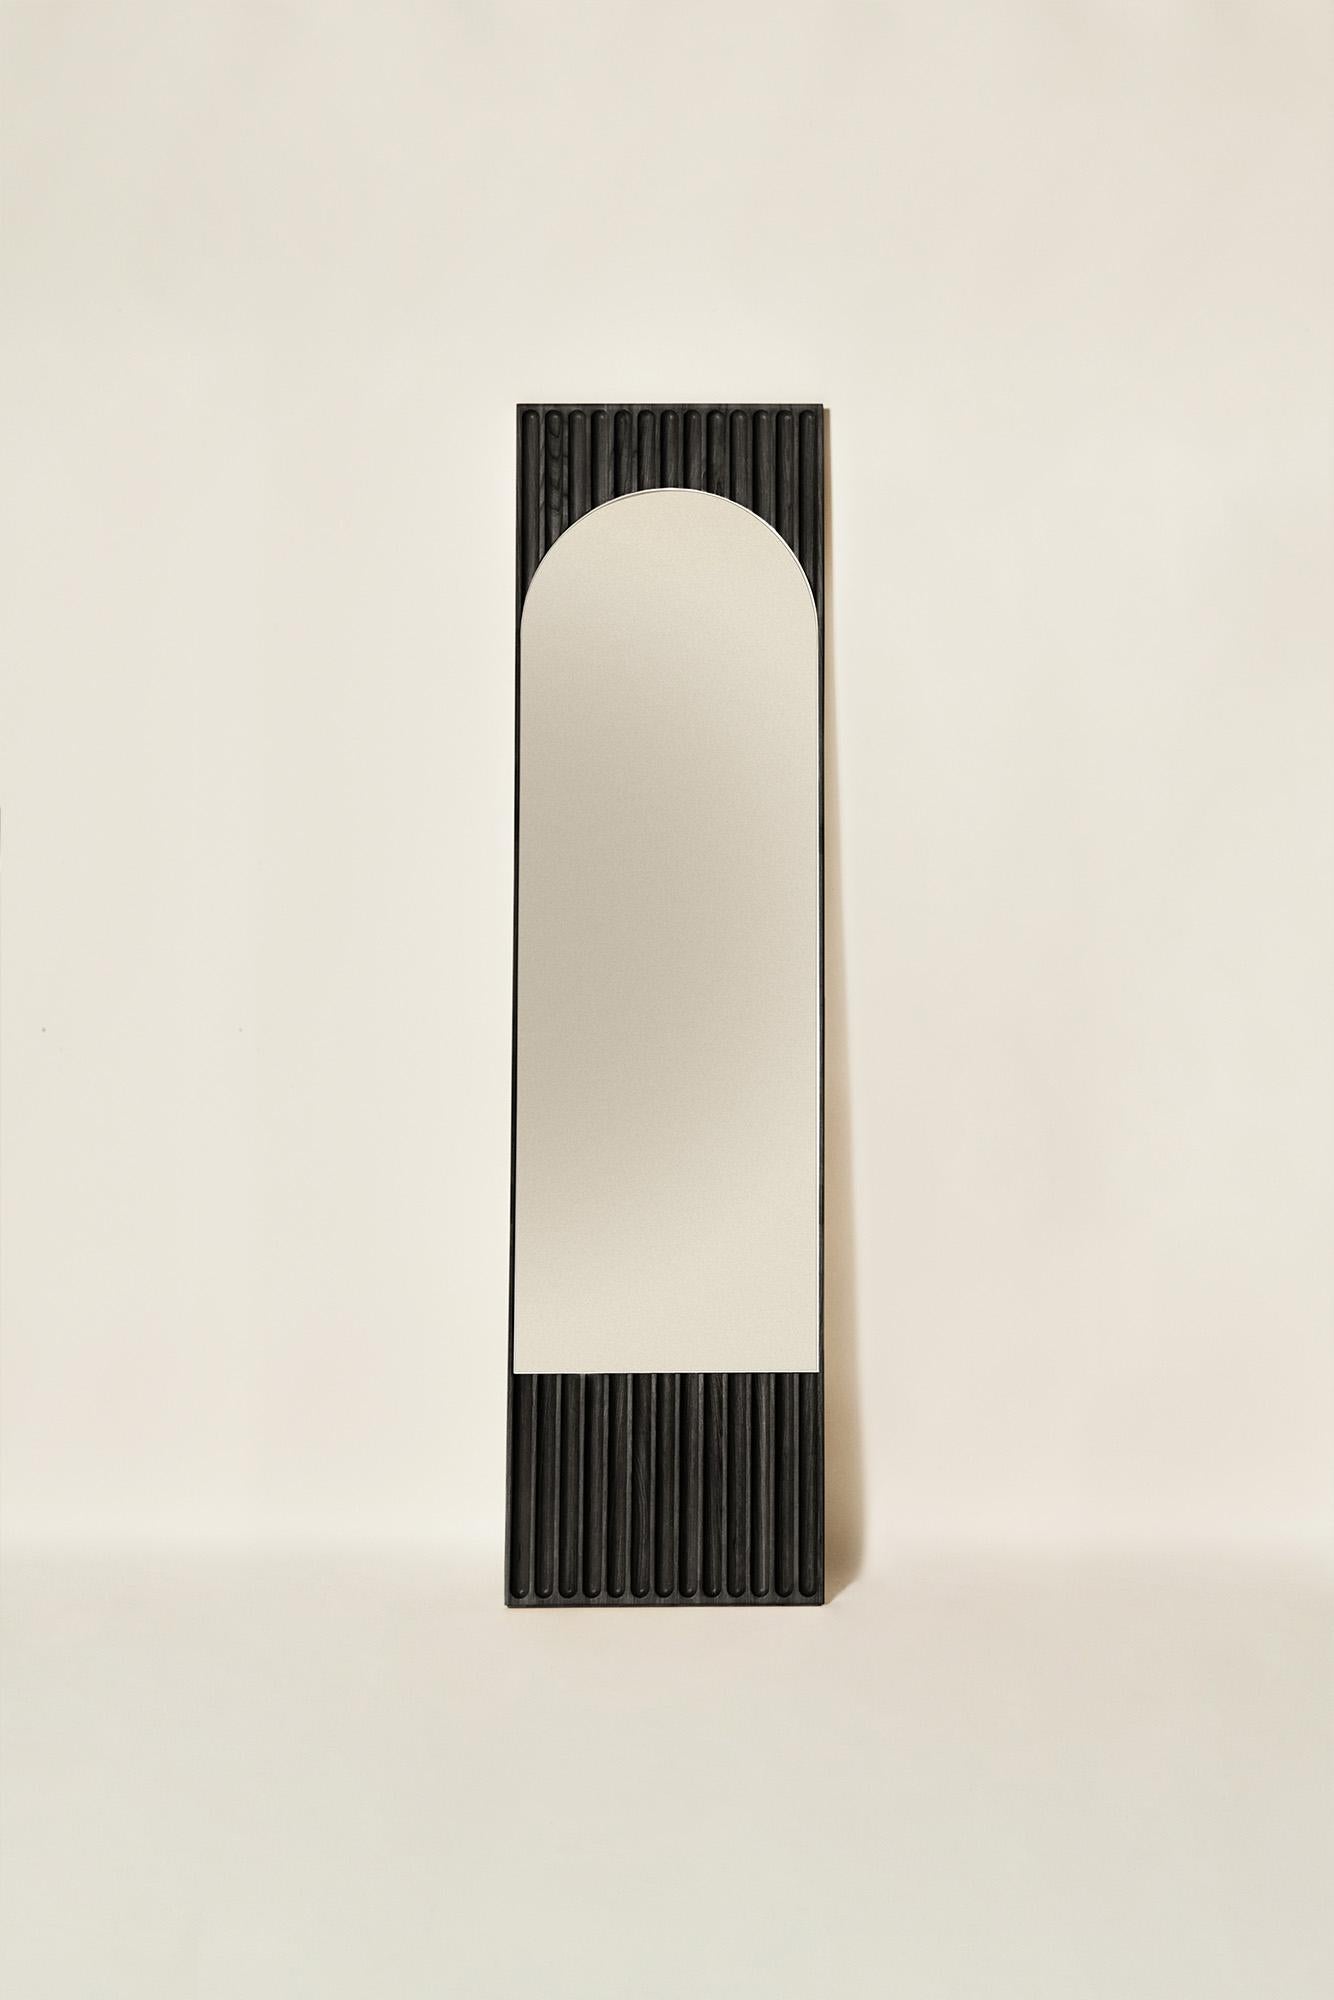 Tutto Sesto Solid Wood Rectangular Mirror, Ash in Black Finish, Contemporary In New Condition For Sale In Cadeglioppi de Oppeano, VR